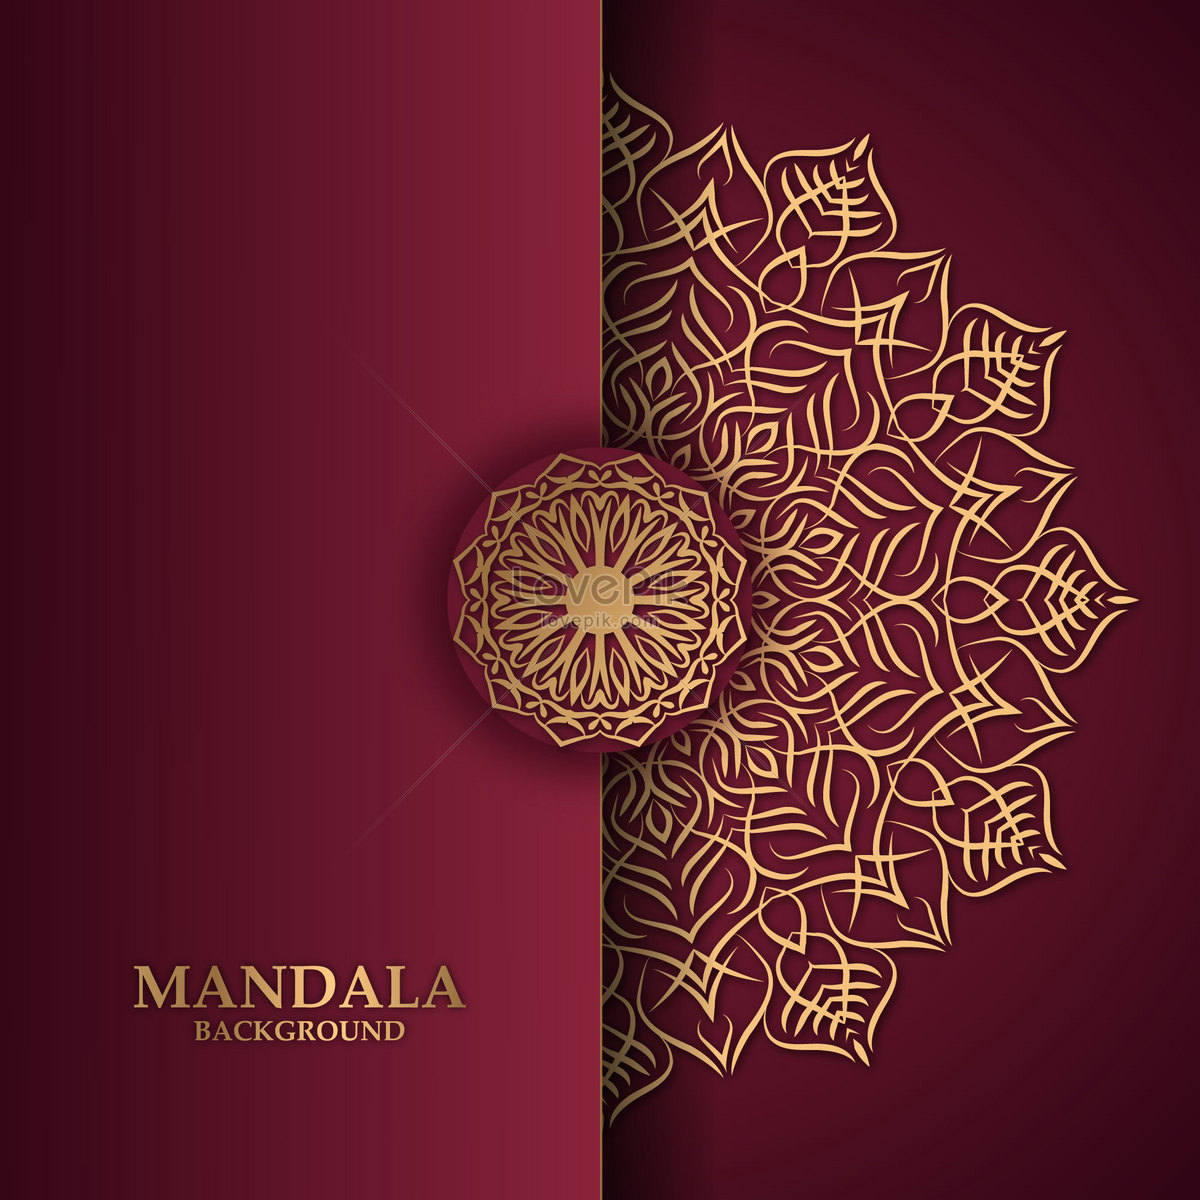 Mandala background: Hình nền Mandala độc đáo và đẹp mắt sẽ giúp cho sản phẩm của bạn trở nên nổi bật và thu hút hơn. Hãy tìm kiếm ngay hình ảnh liên quan đến từ khóa \